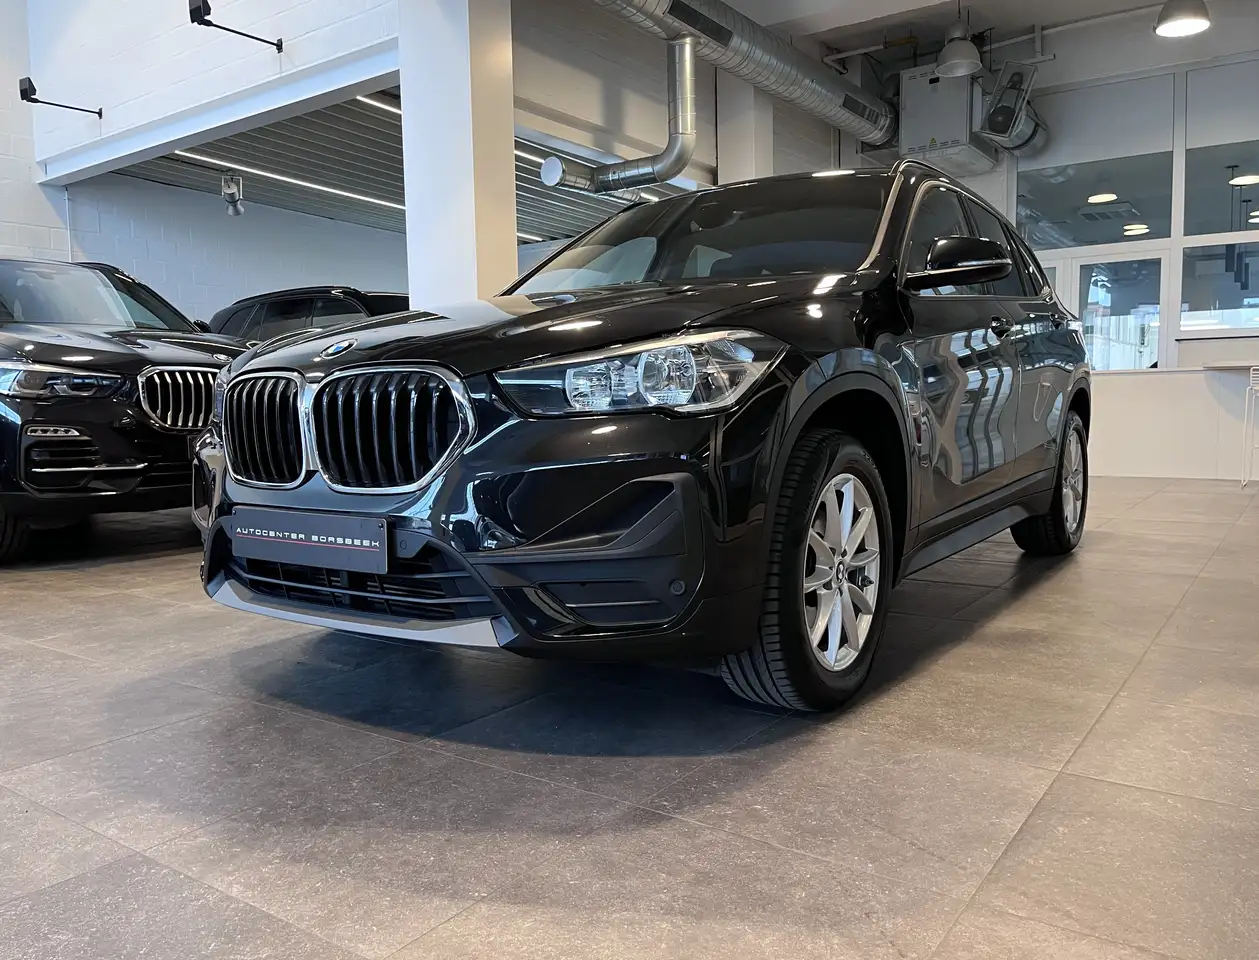 BMW X1 SUV/4x4/Pick-up in Zwart tweedehands in Borsbeek voor € 24.950,-